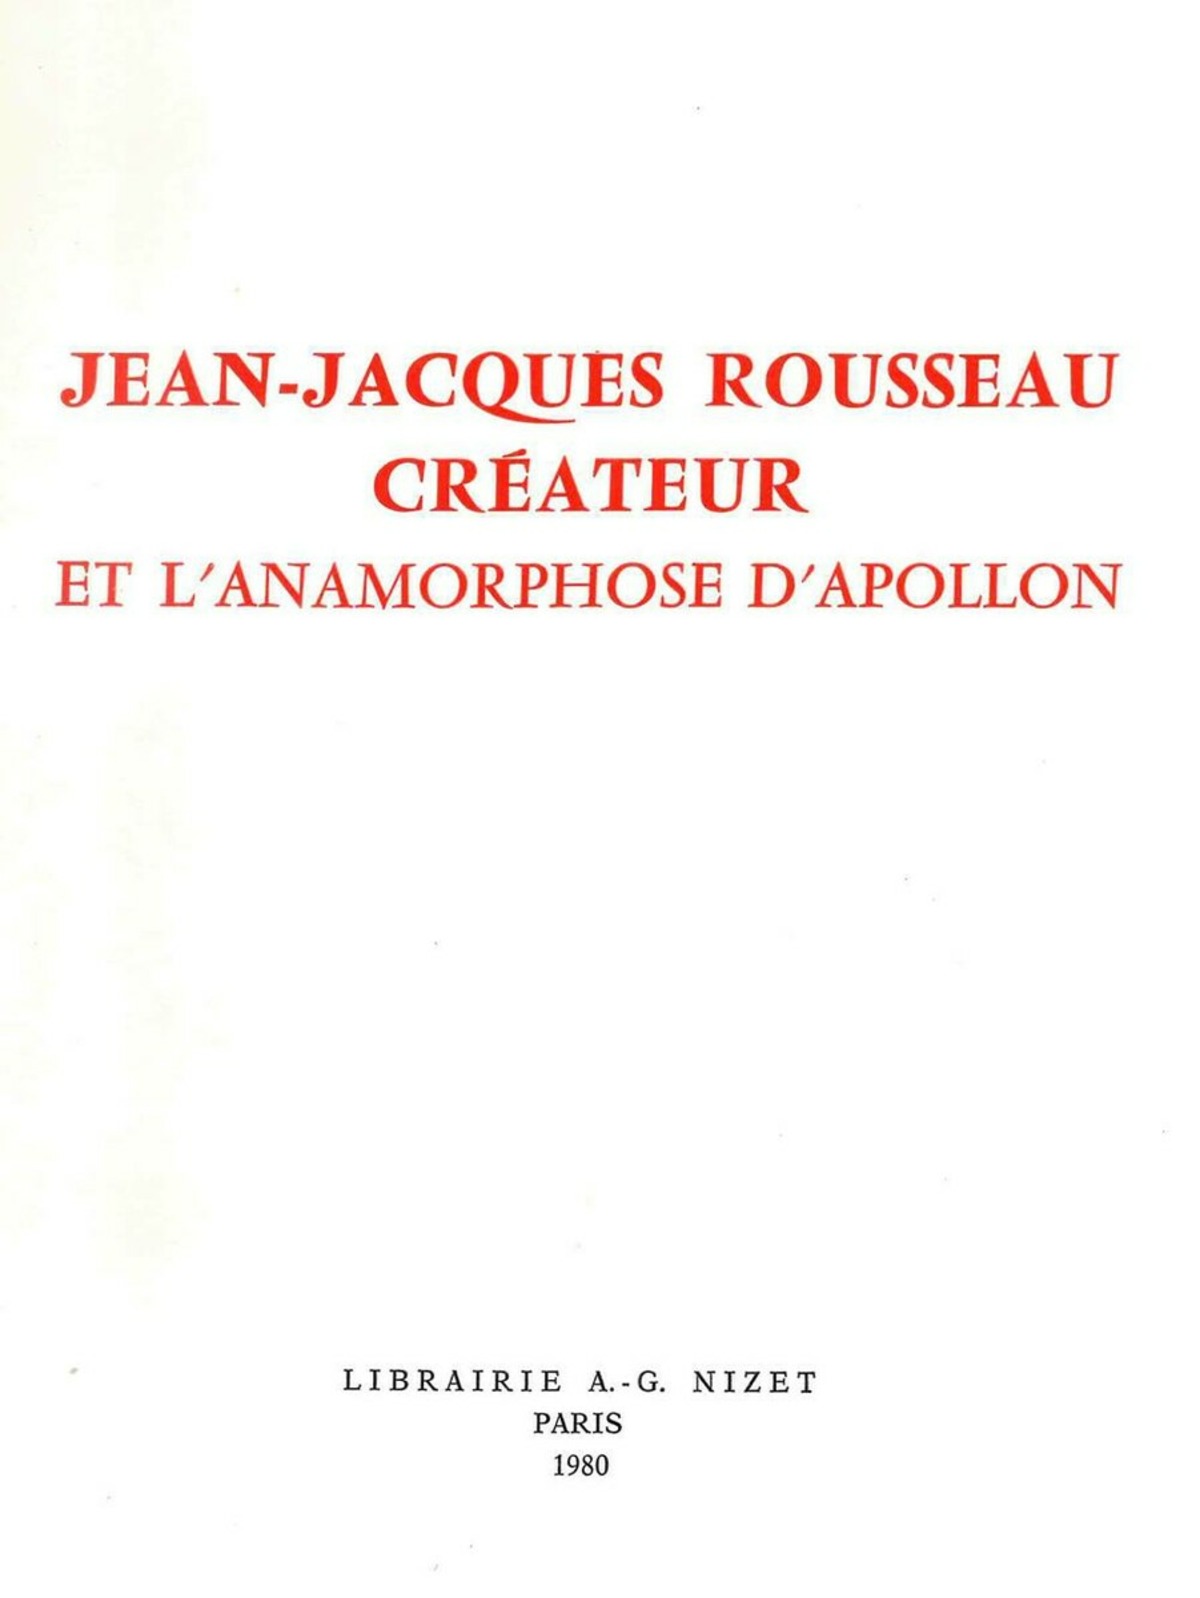 Jean-Jacques Rousseau créateur